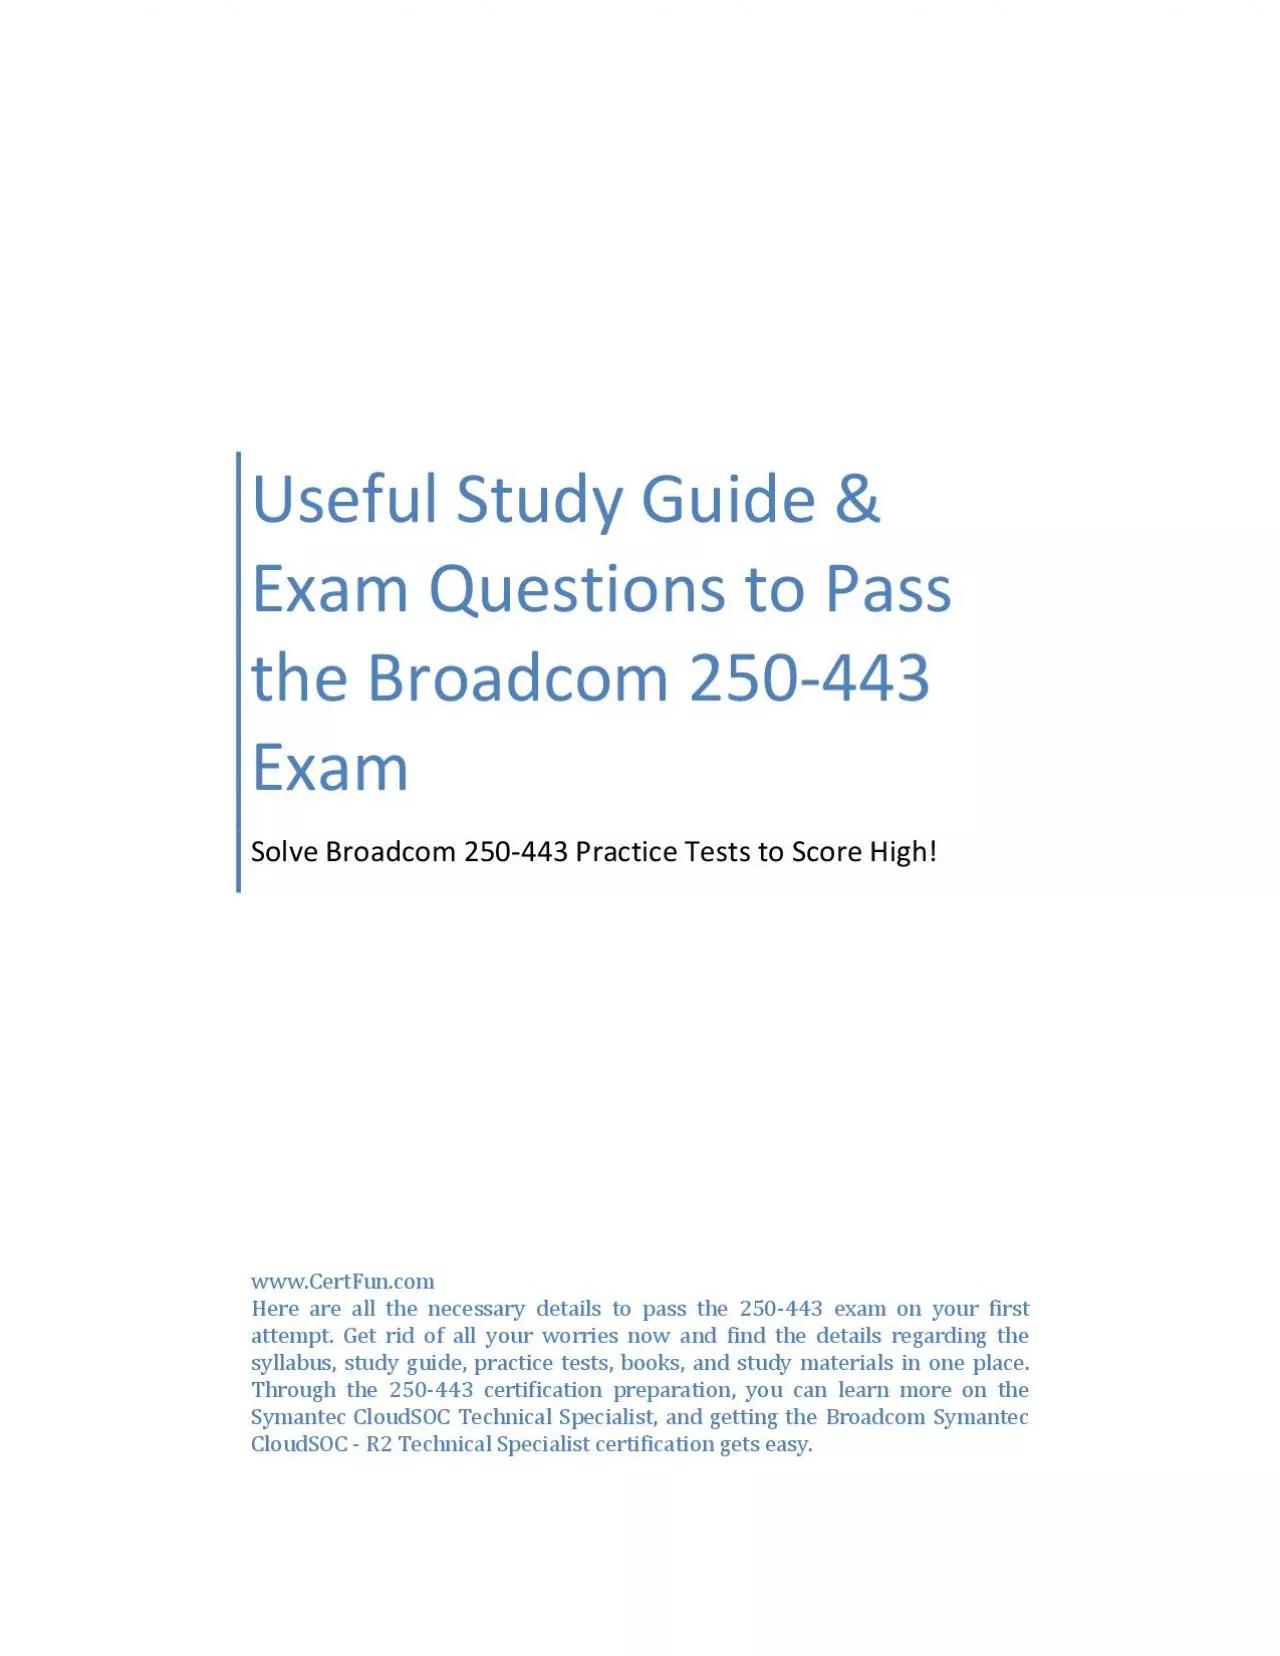 Useful Study Guide & Exam Questions to Pass the Broadcom 250-443 Exam